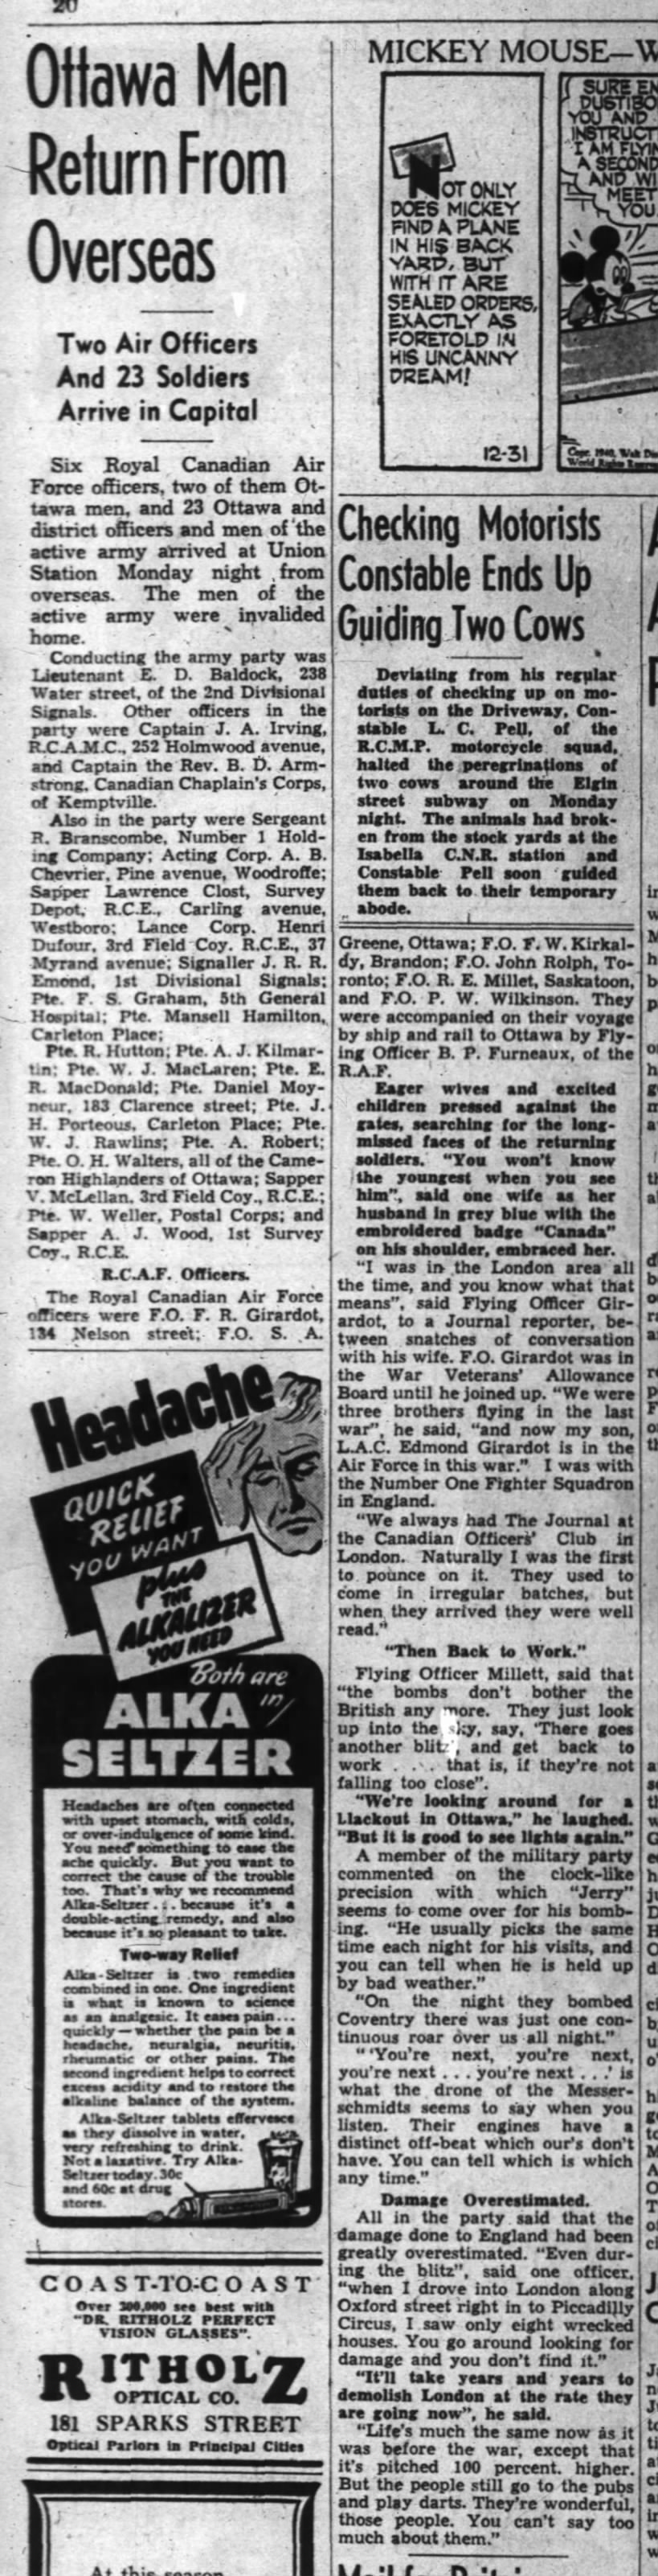 Ottawa Men Return From Overseas - The Ottawa Journal - 31 December 1940